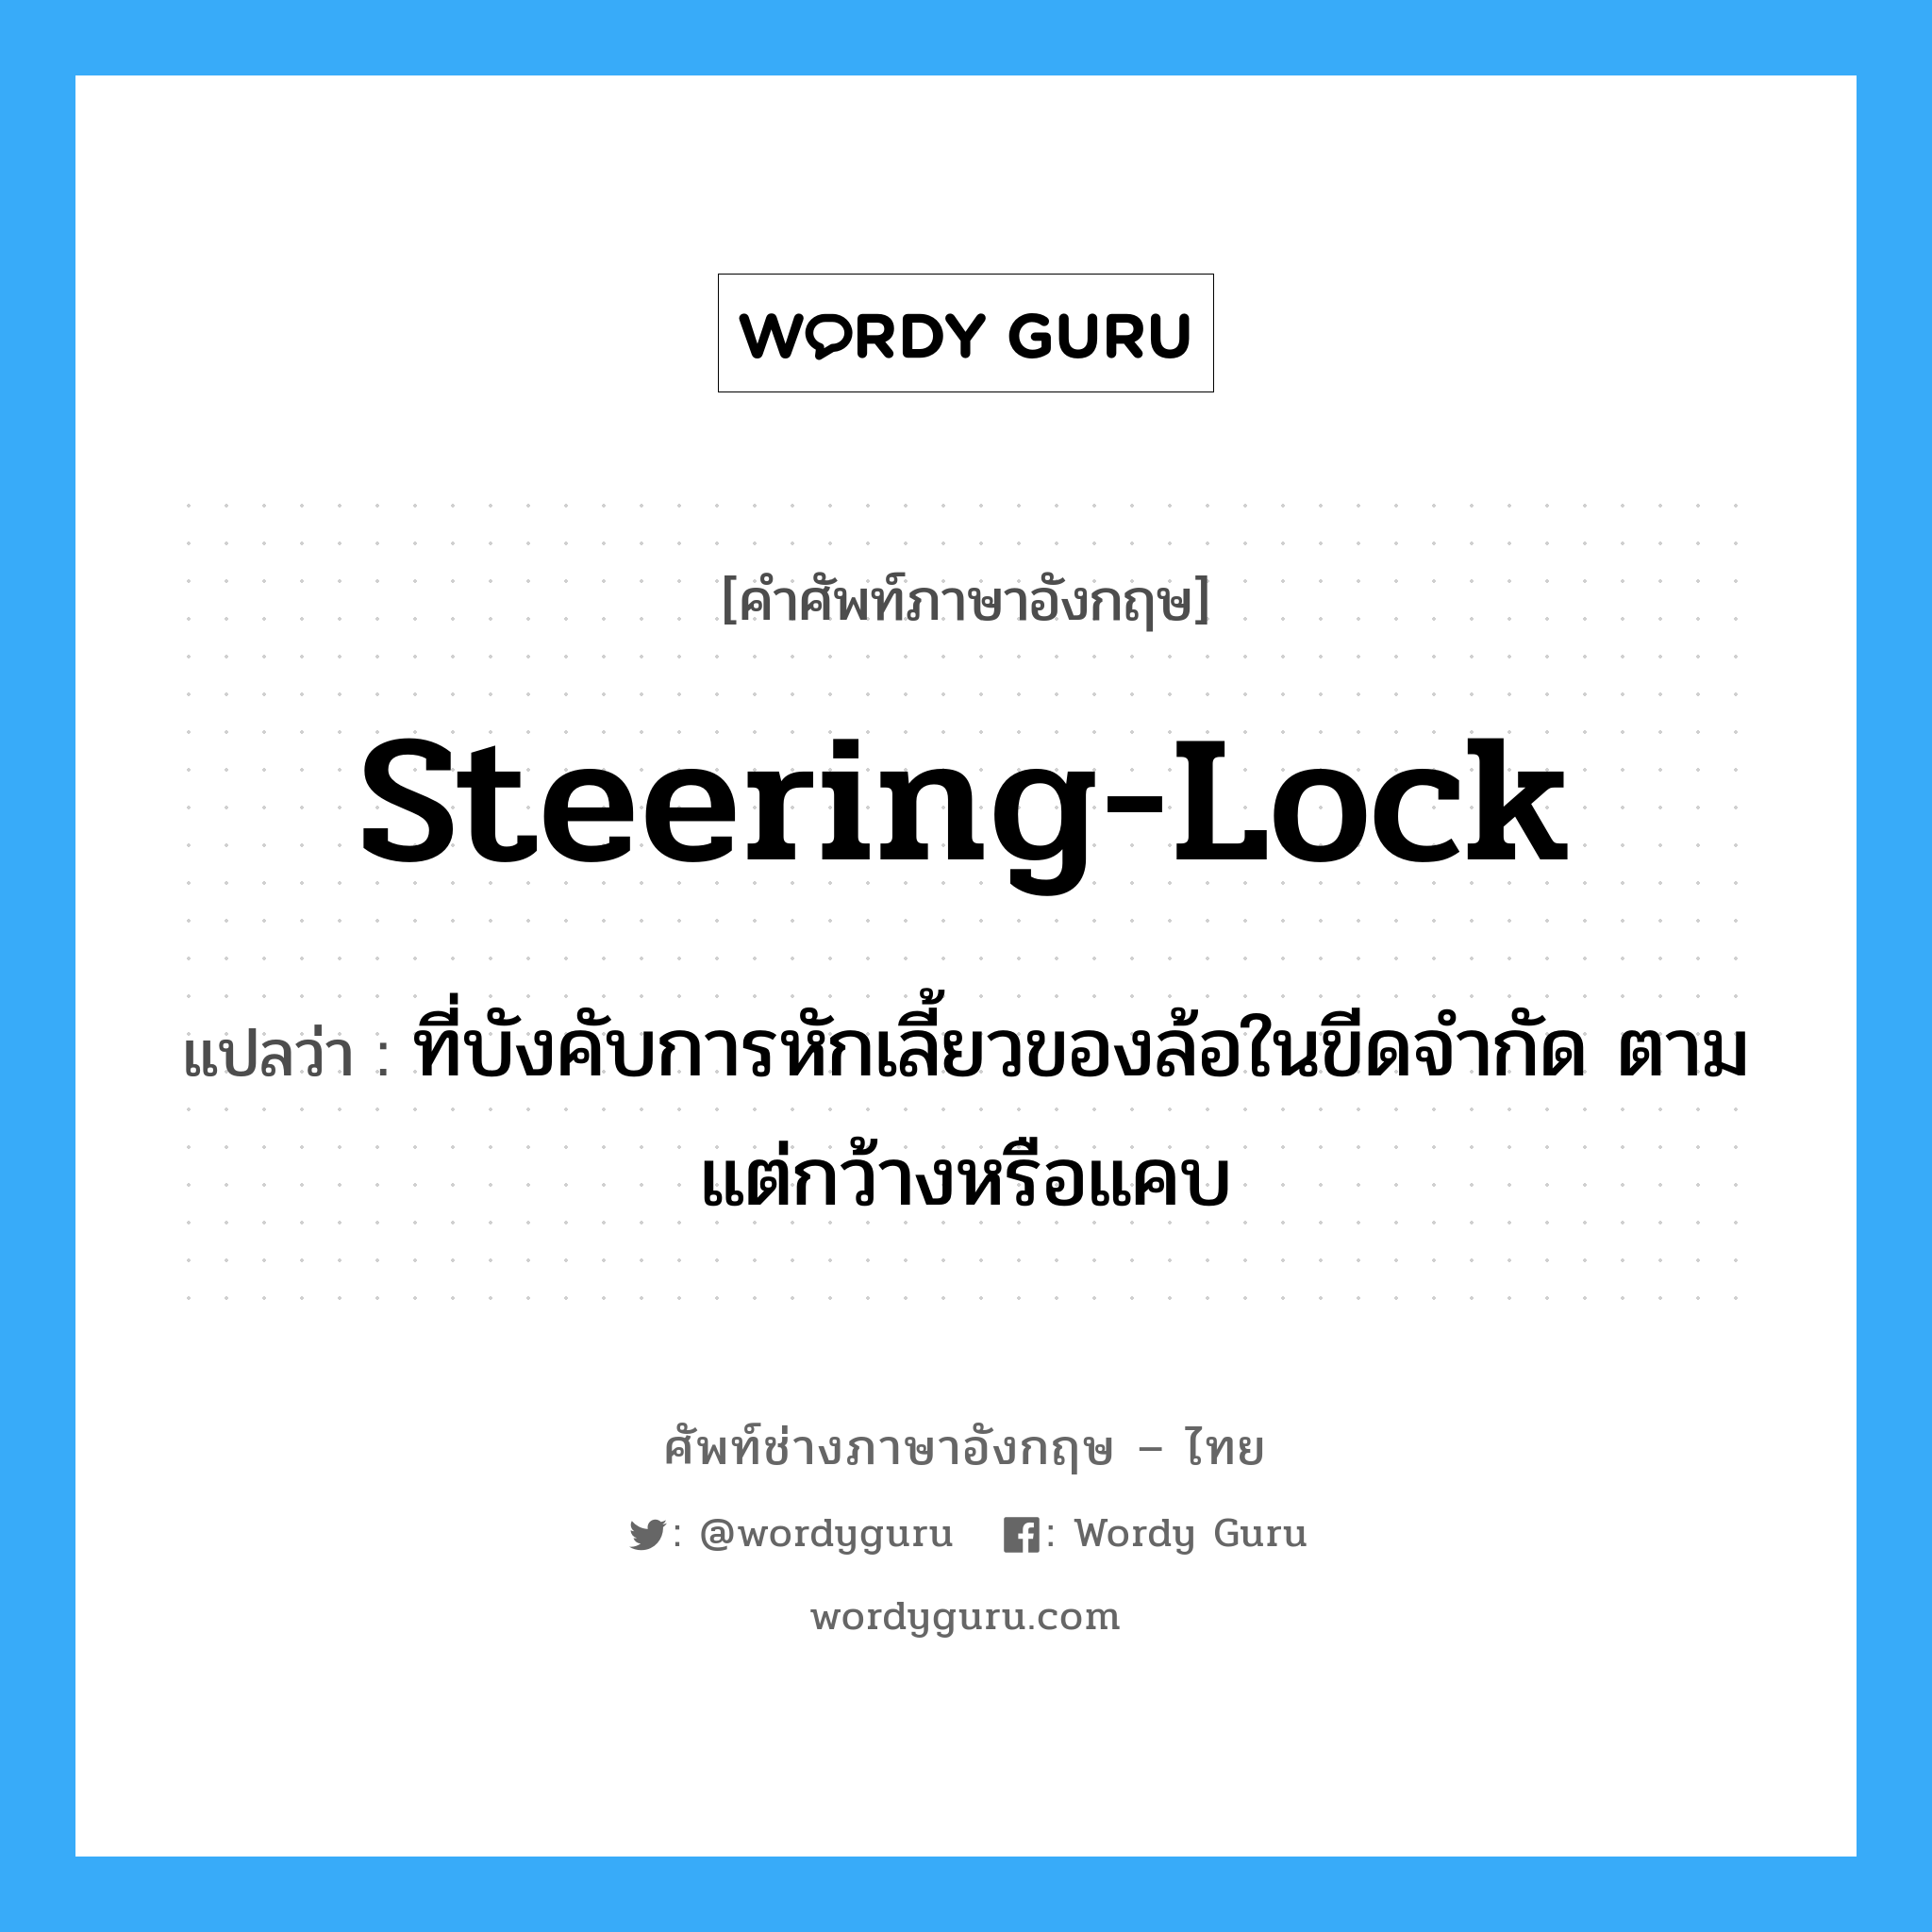 steering-lock แปลว่า?, คำศัพท์ช่างภาษาอังกฤษ - ไทย steering-lock คำศัพท์ภาษาอังกฤษ steering-lock แปลว่า ที่บังคับการหักเลี้ยวของล้อในขีดจำกัด ตามแต่กว้างหรือแคบ